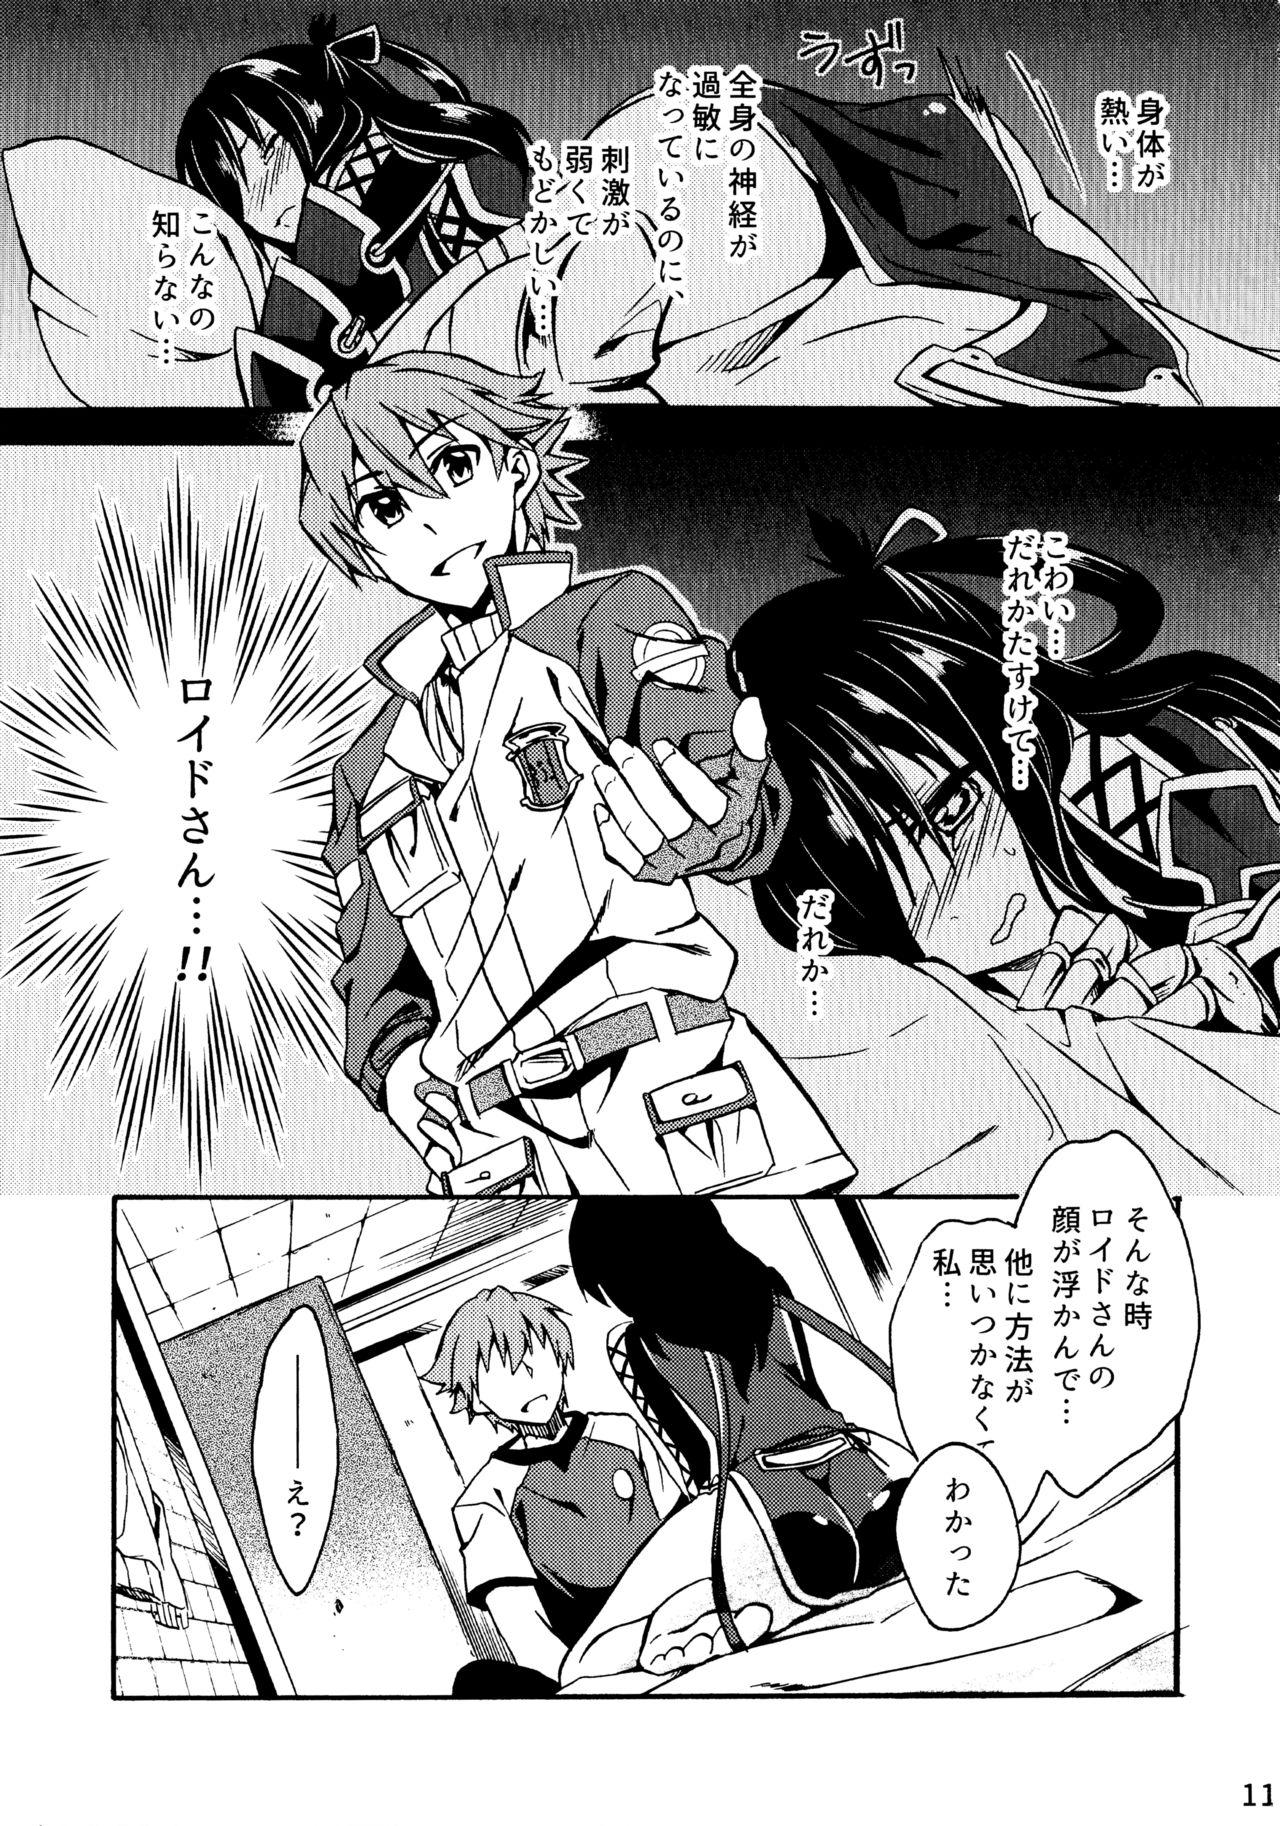 Sextoys Tsukiakari no Yoru - The legend of heroes Scissoring - Page 11